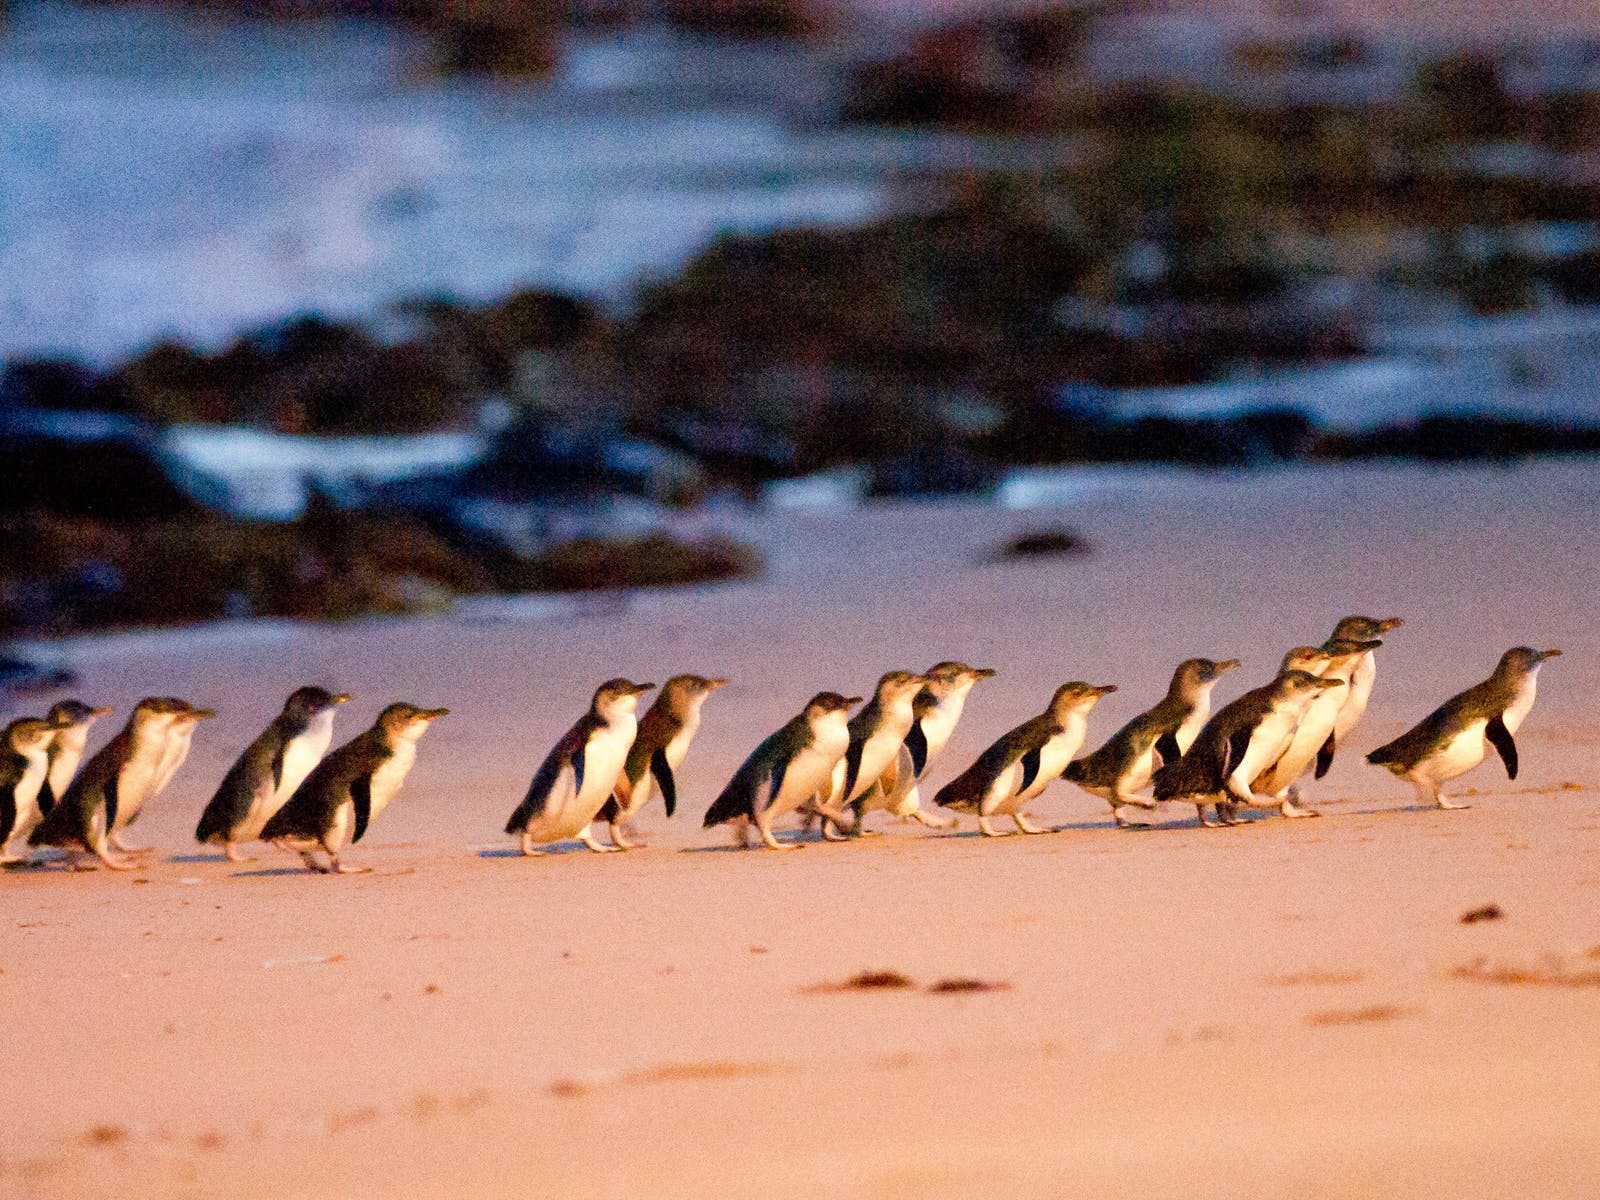 Phillip Island Wine, Wildlife, & Penguins Tour